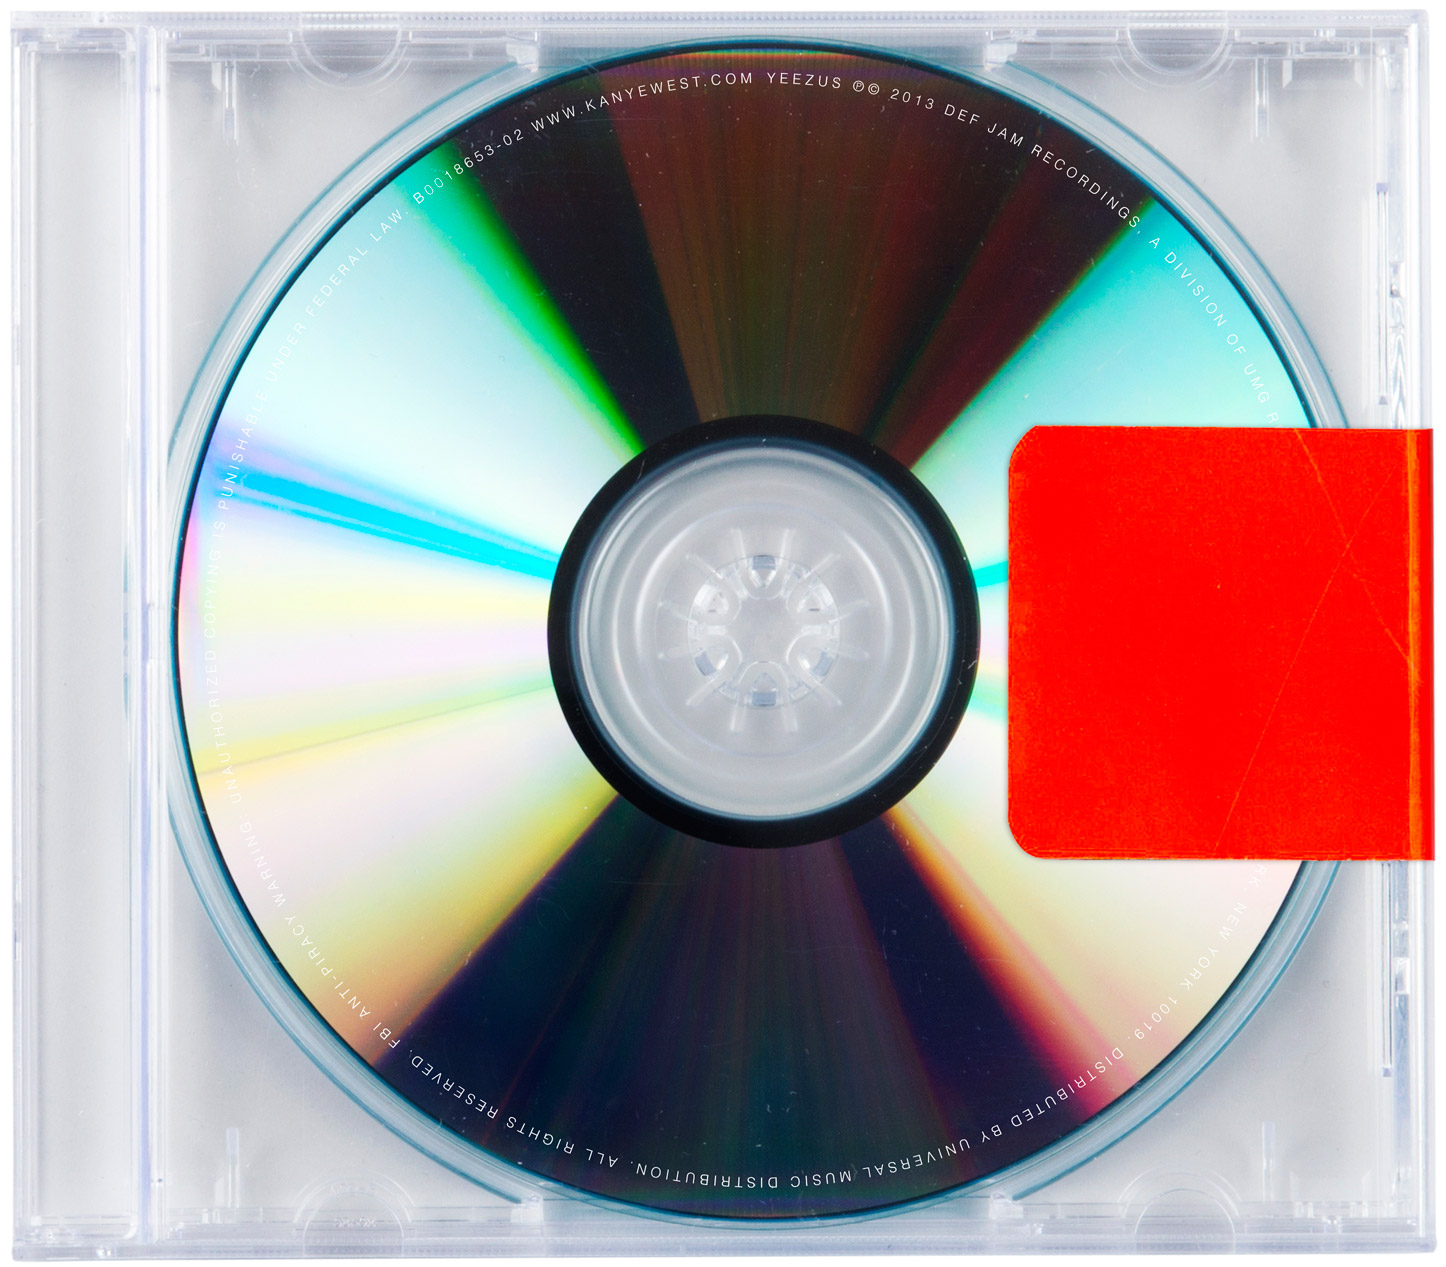 Kanye West Yeezus Album Cover Hiphop N More